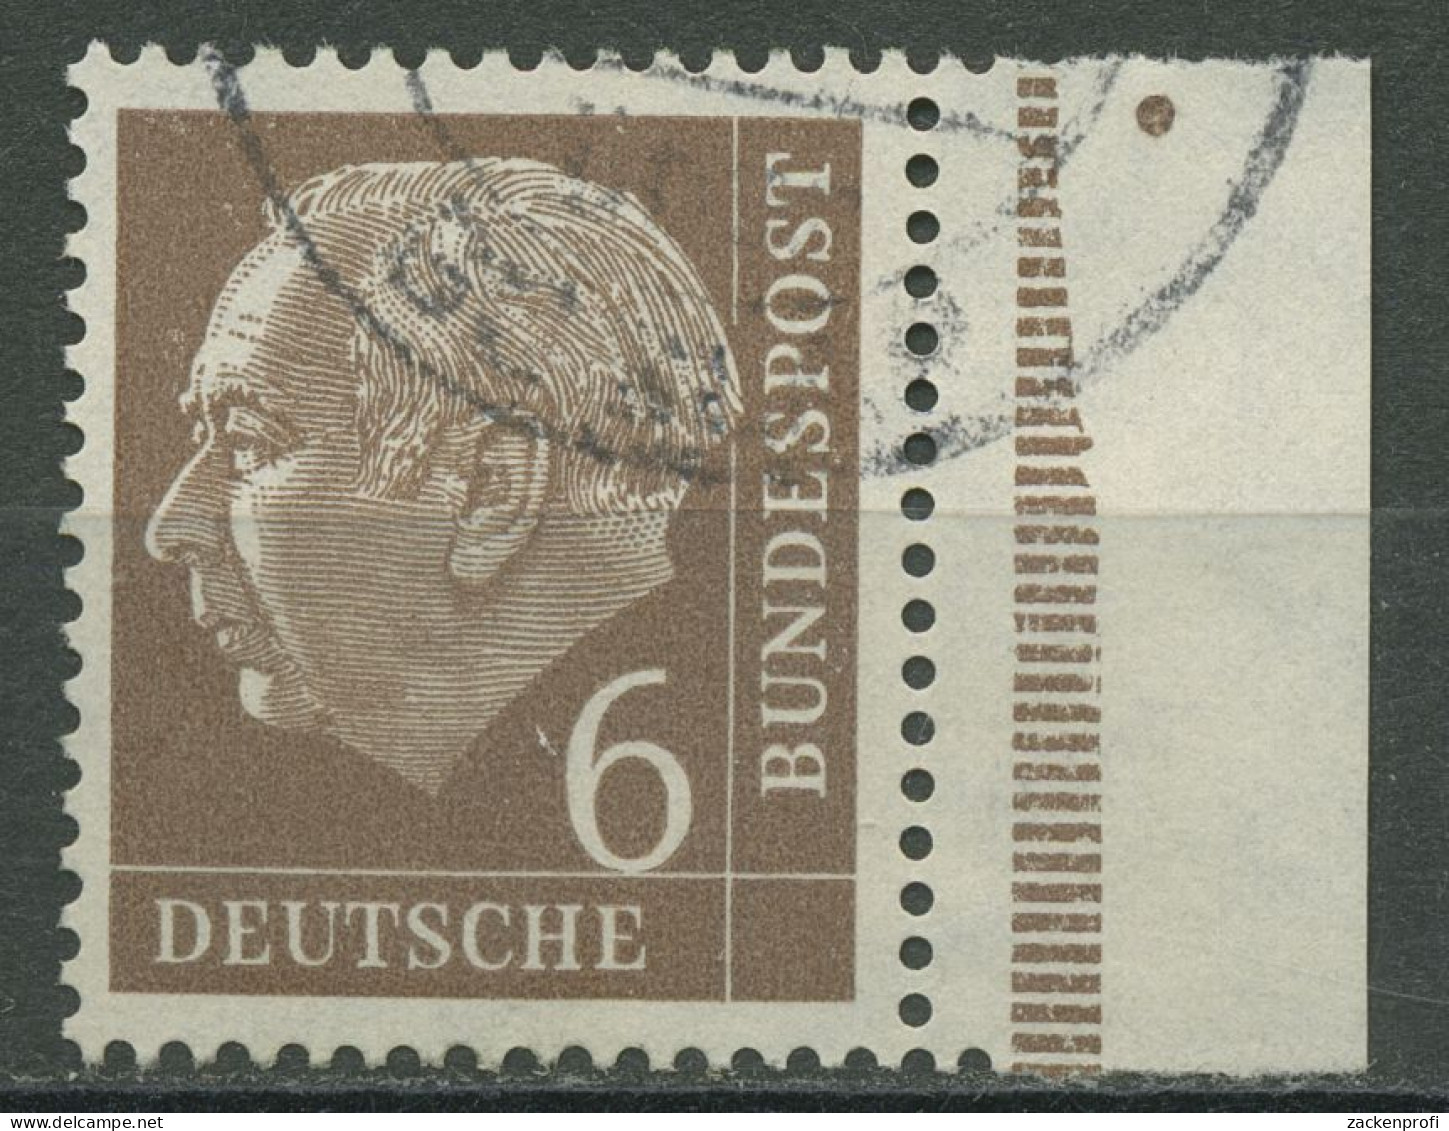 Bund 1954 Th. Heuss Bogenmarke Mit Seitenrand 180 SR Gestempelt - Used Stamps